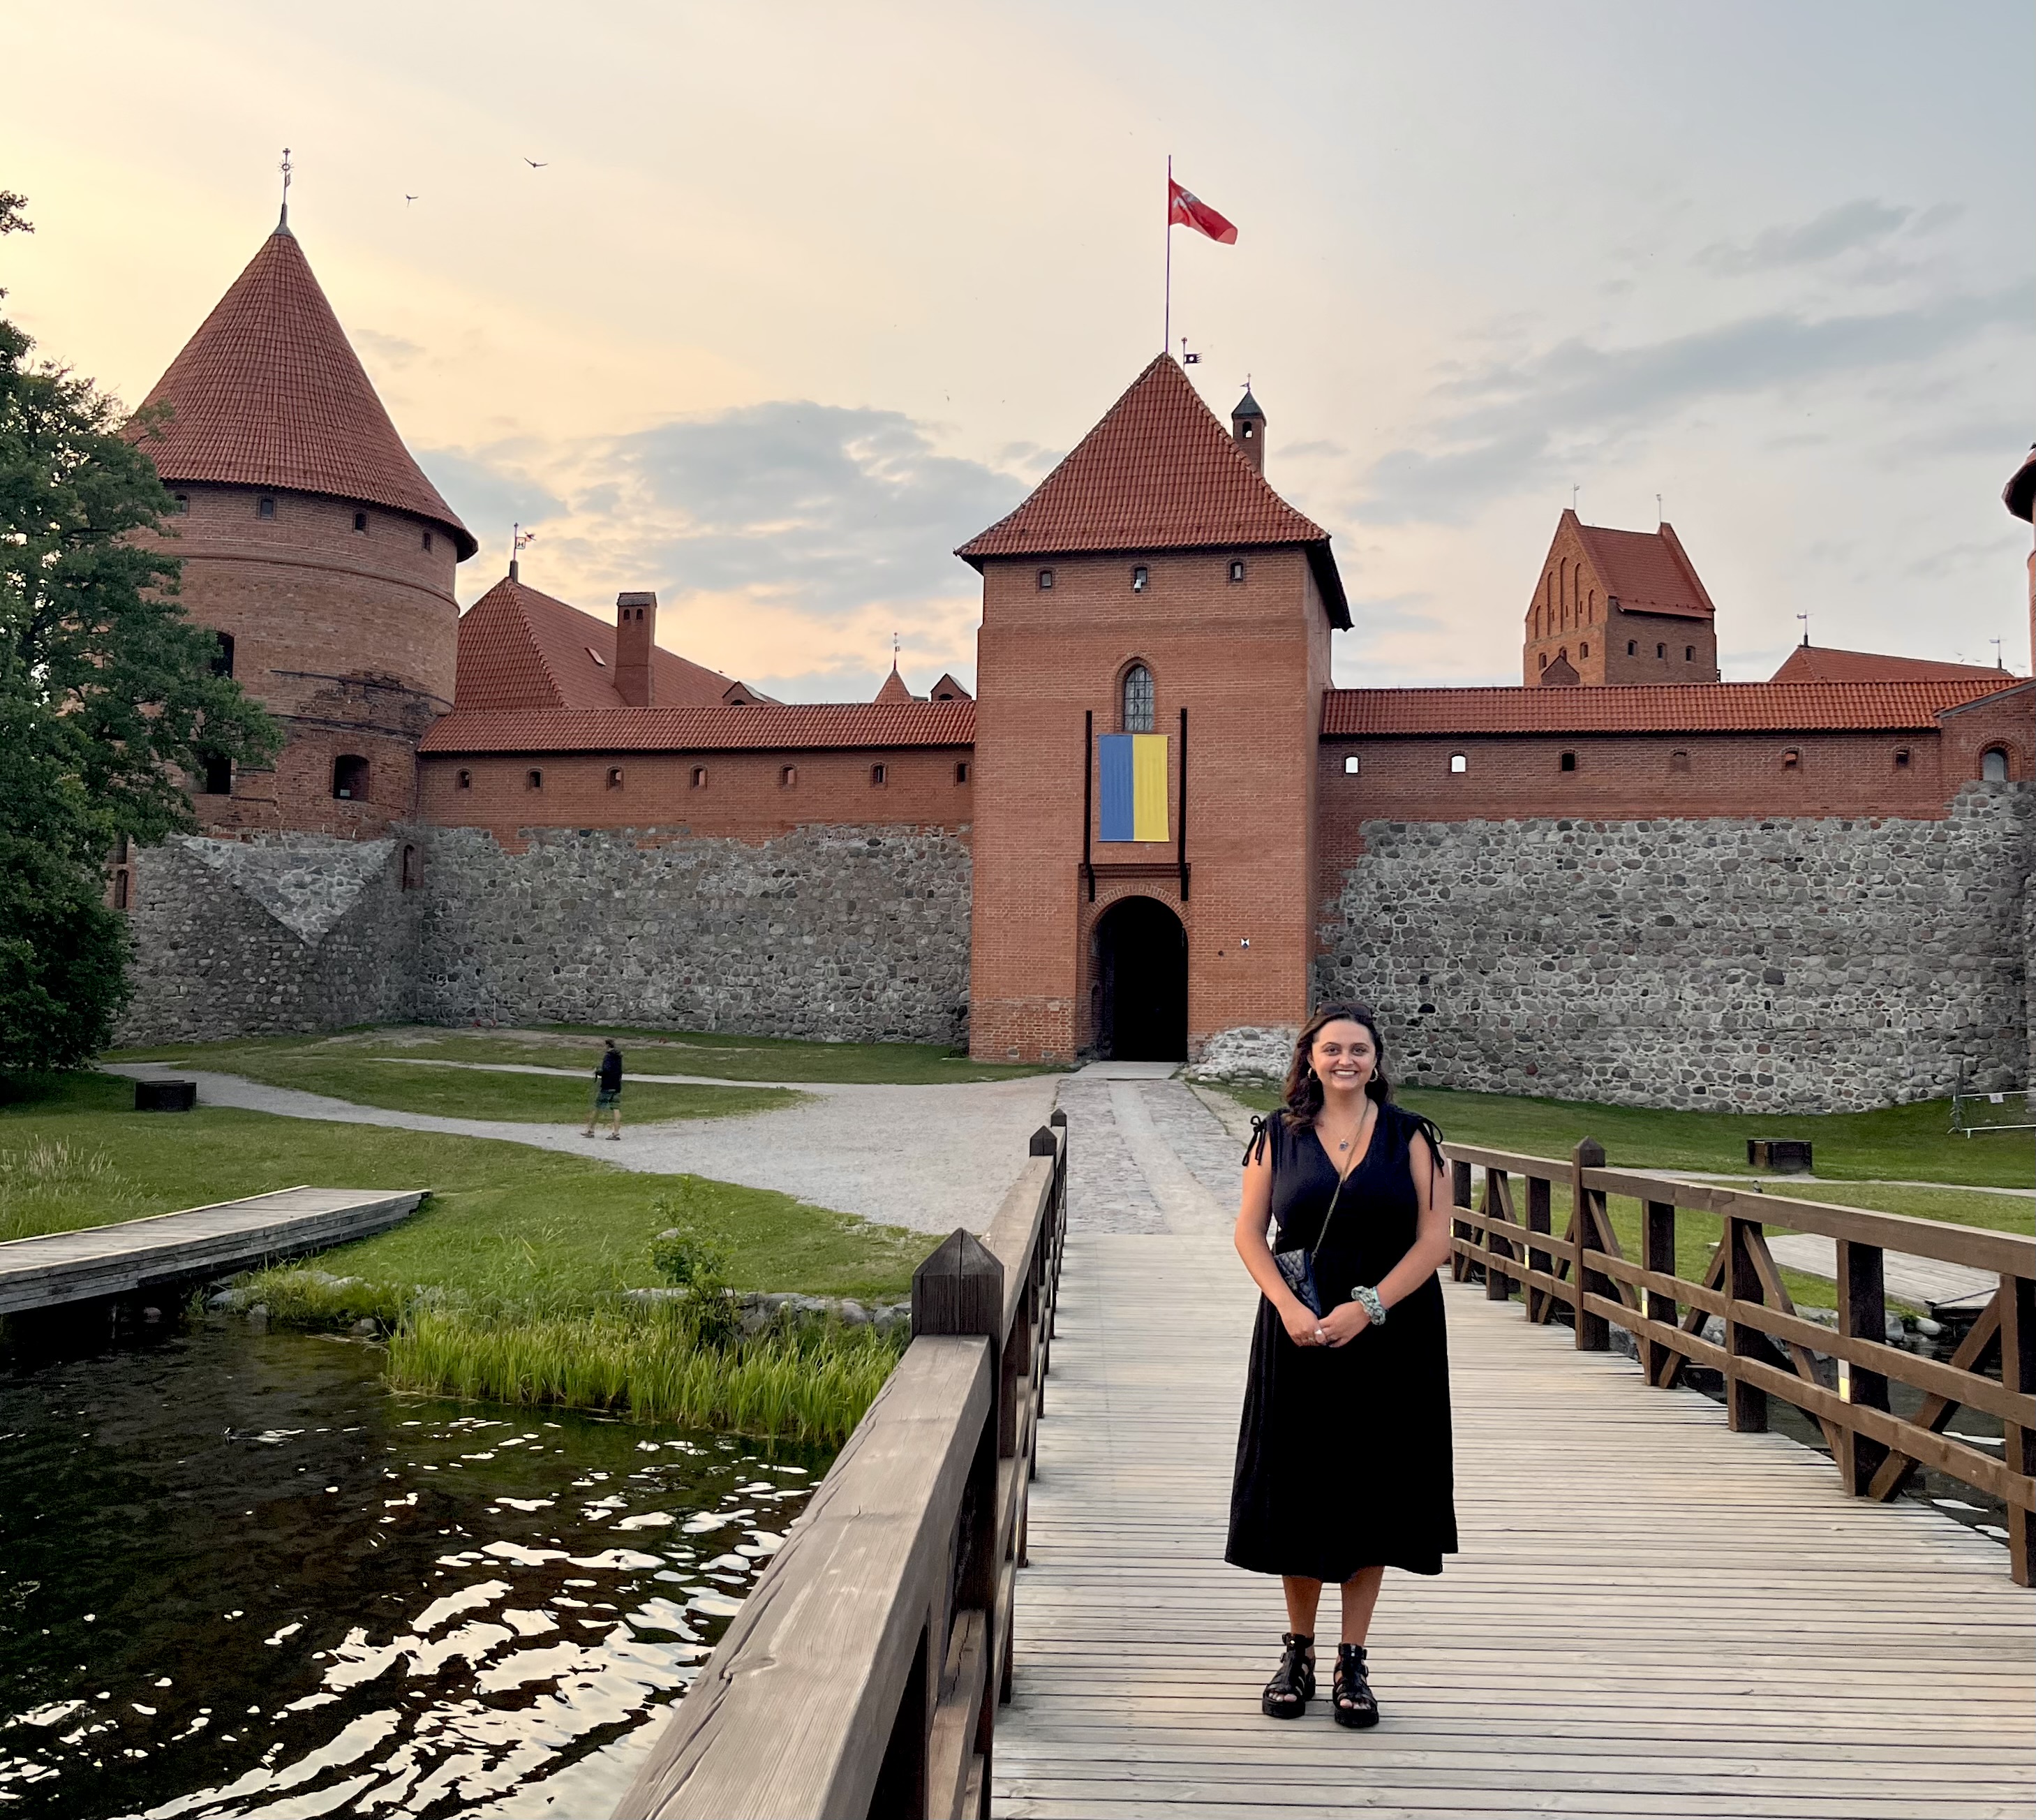 Joslyn at Trakai Castle